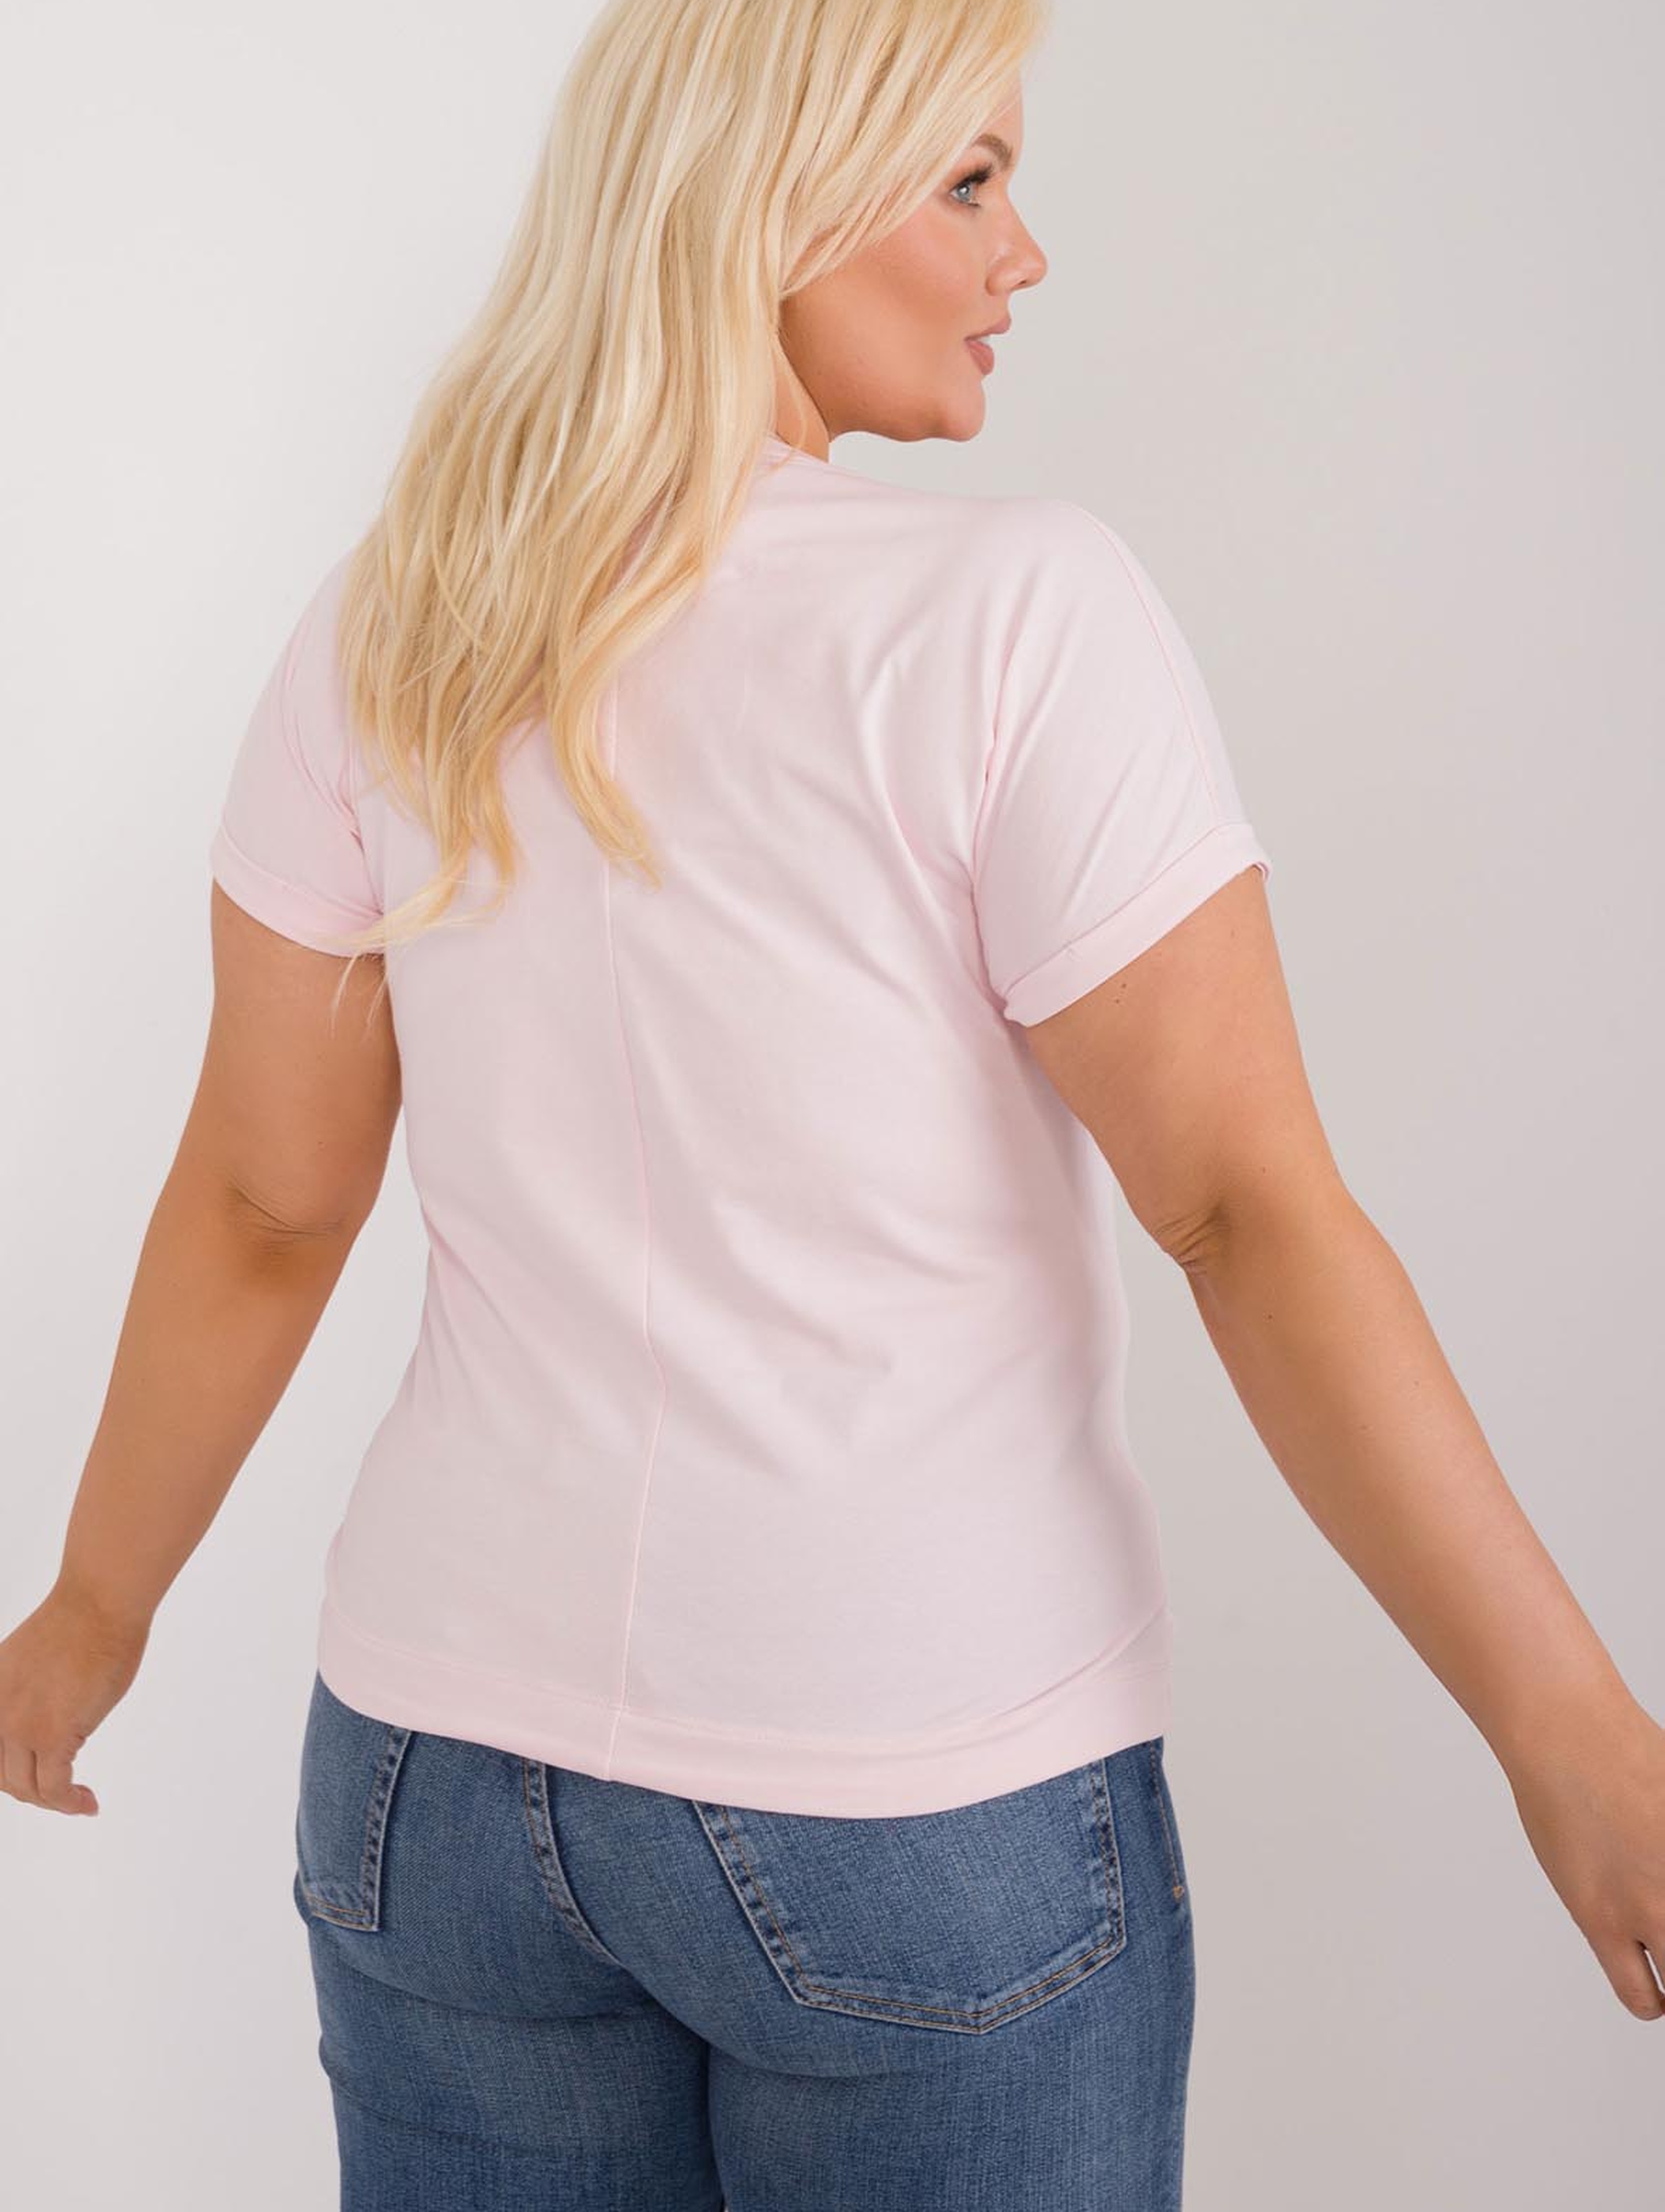 Damska koszulka plus size jasno różowa